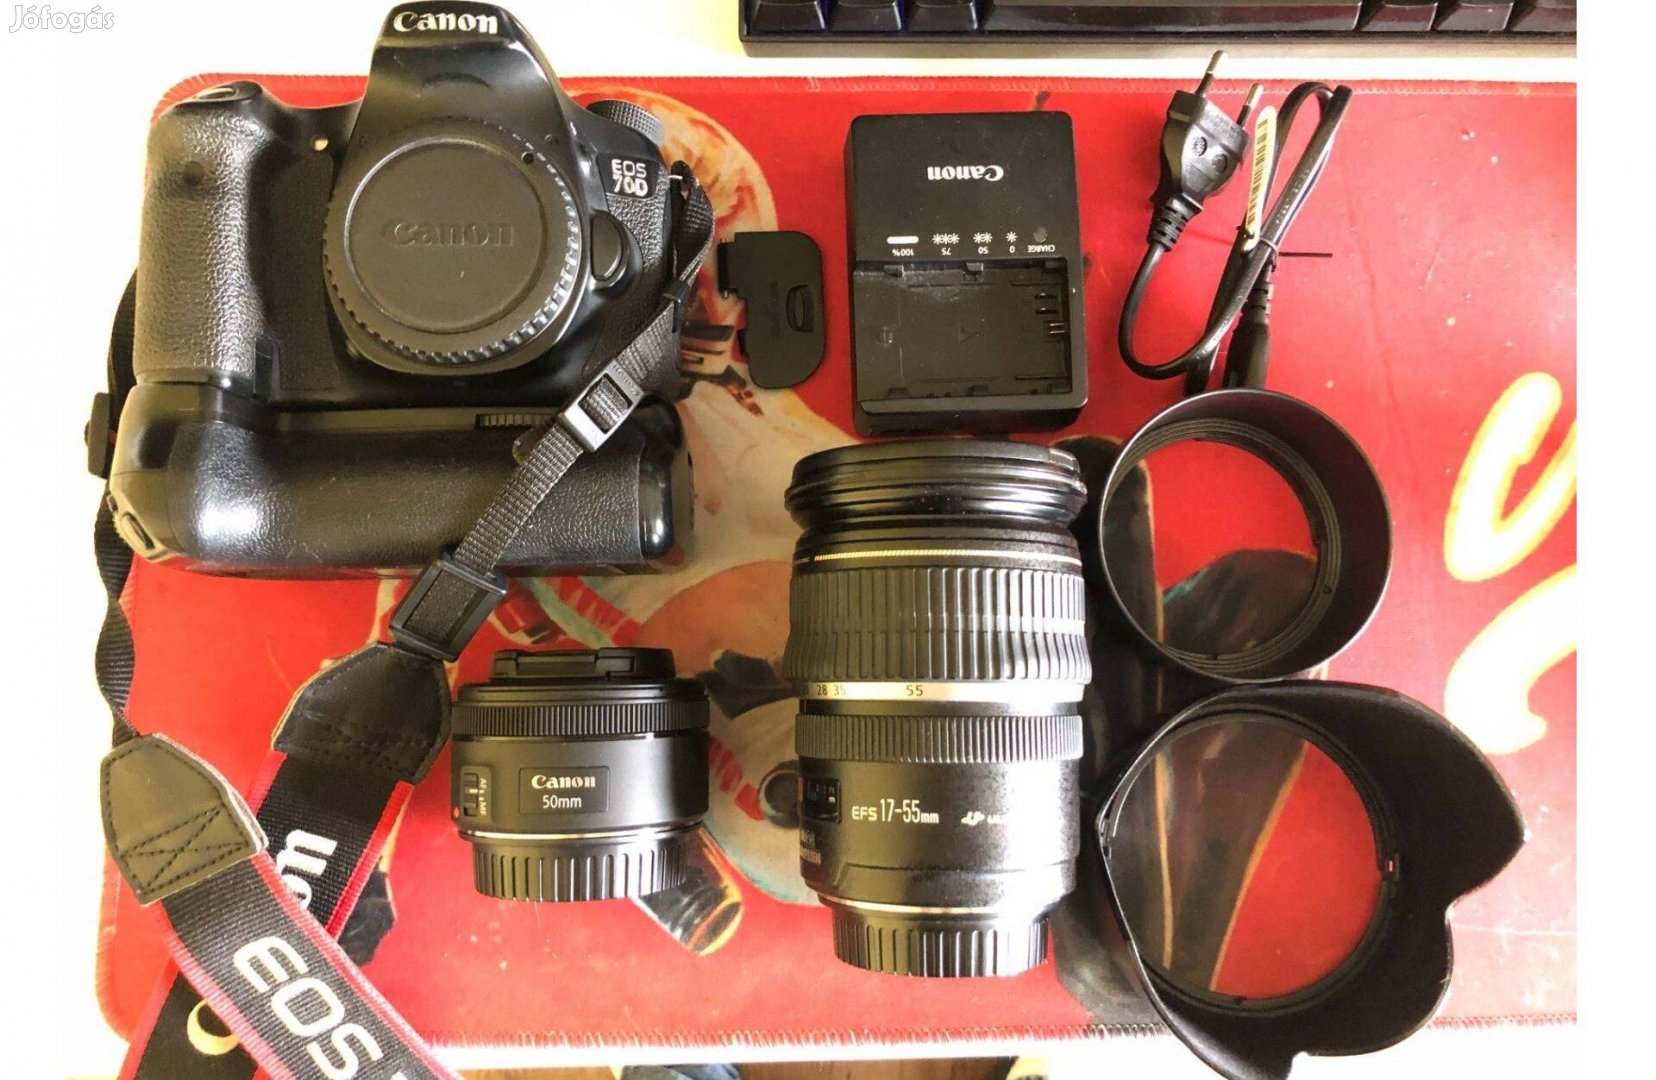 Canon 70d dslr digitális fényképezőgép szett 17-55mm 50mm objektív